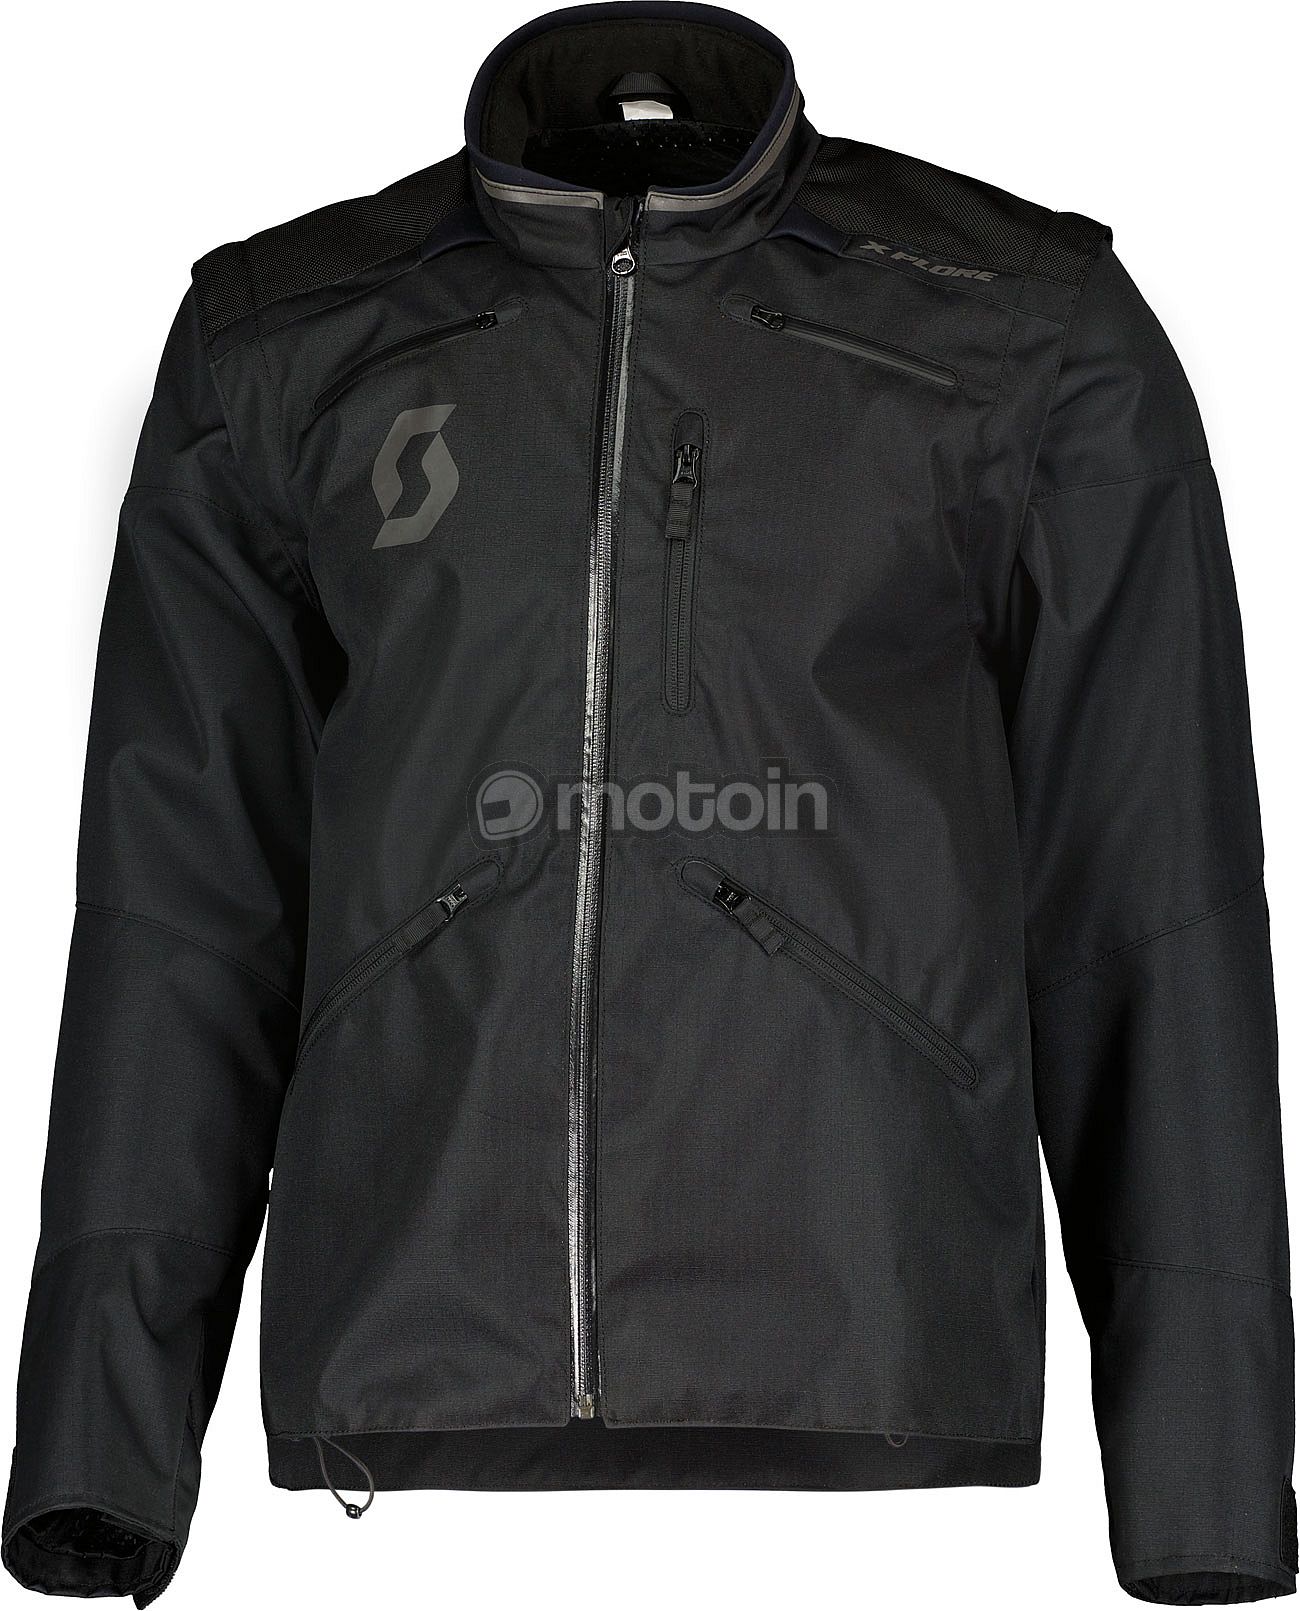 Scott X-Plore S23, chaqueta textil